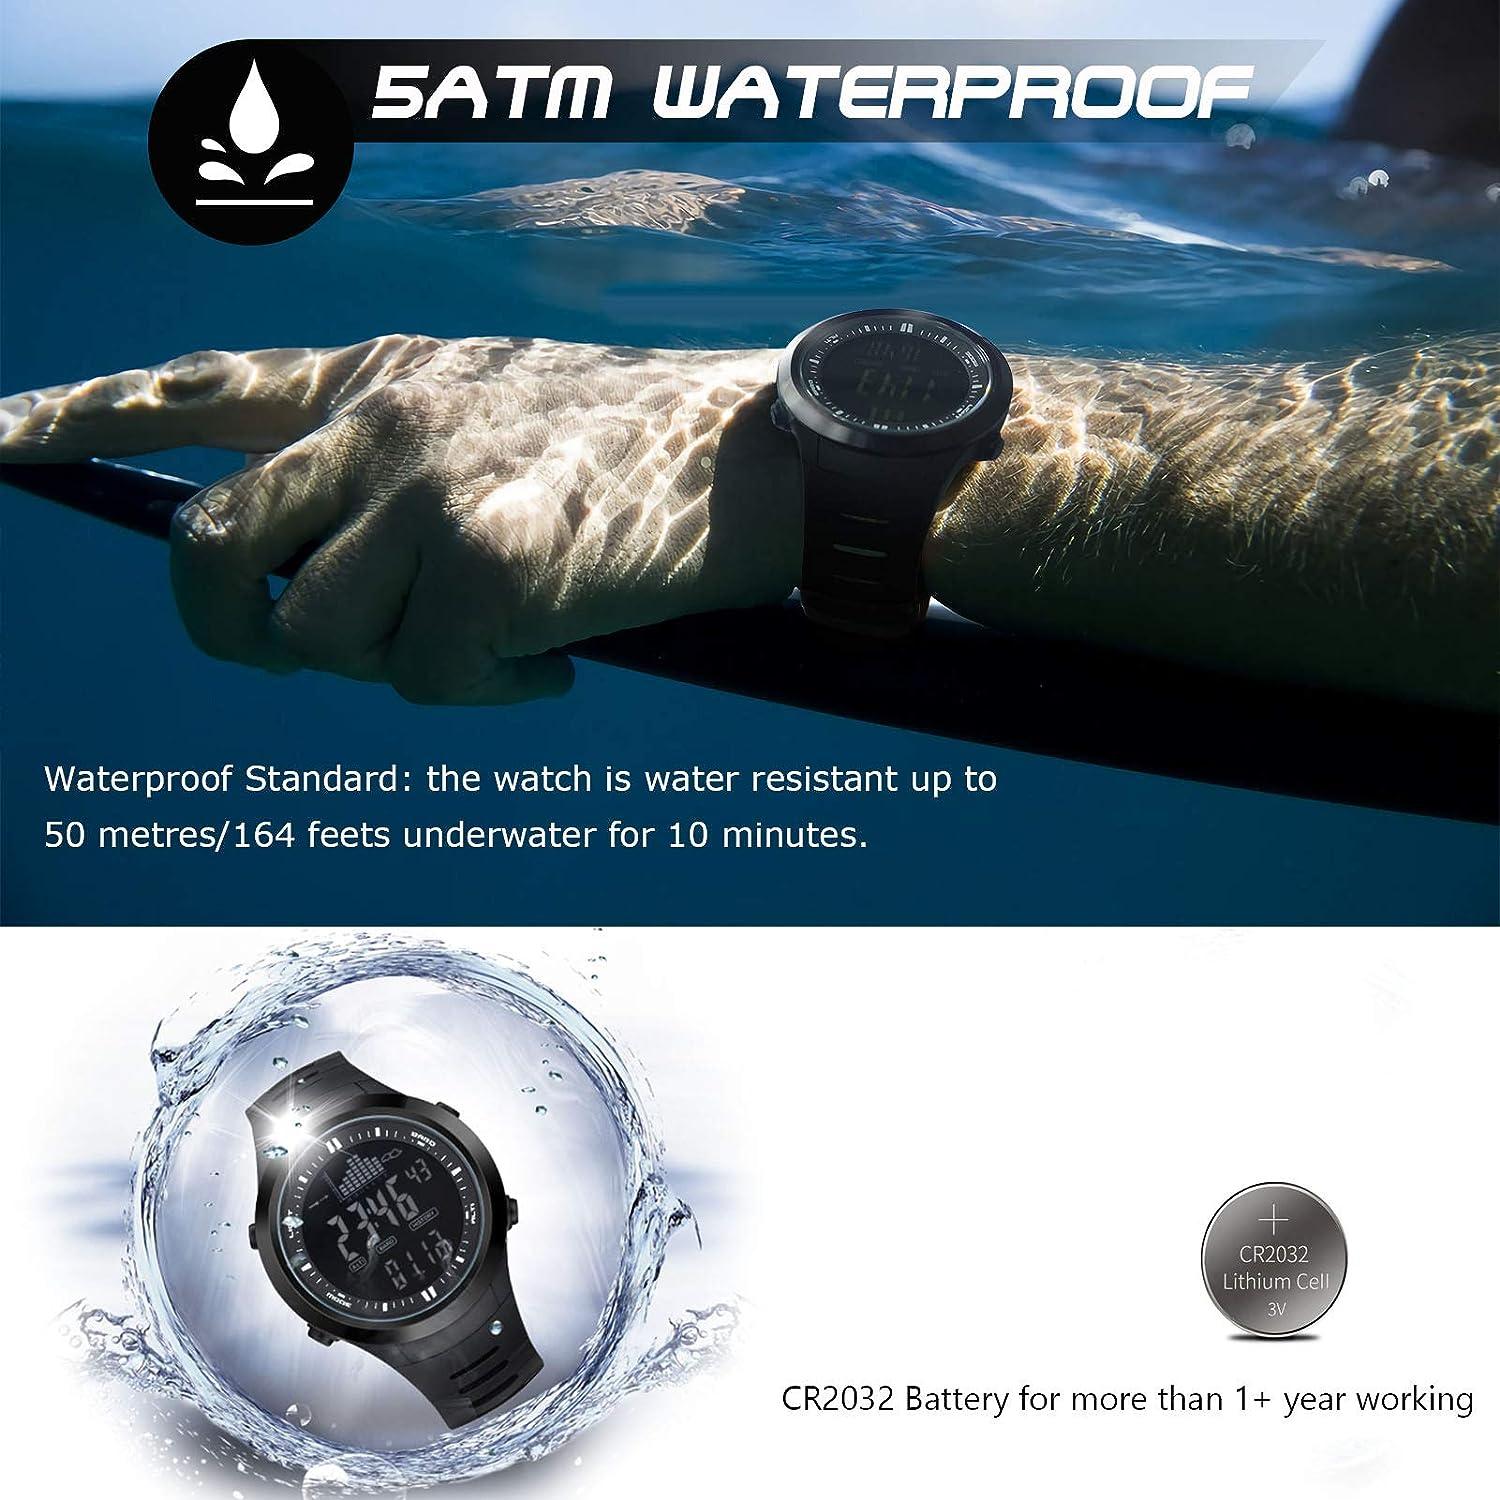 Casio Protrek Smart Watch for your Outdoor Adventures & Travel -